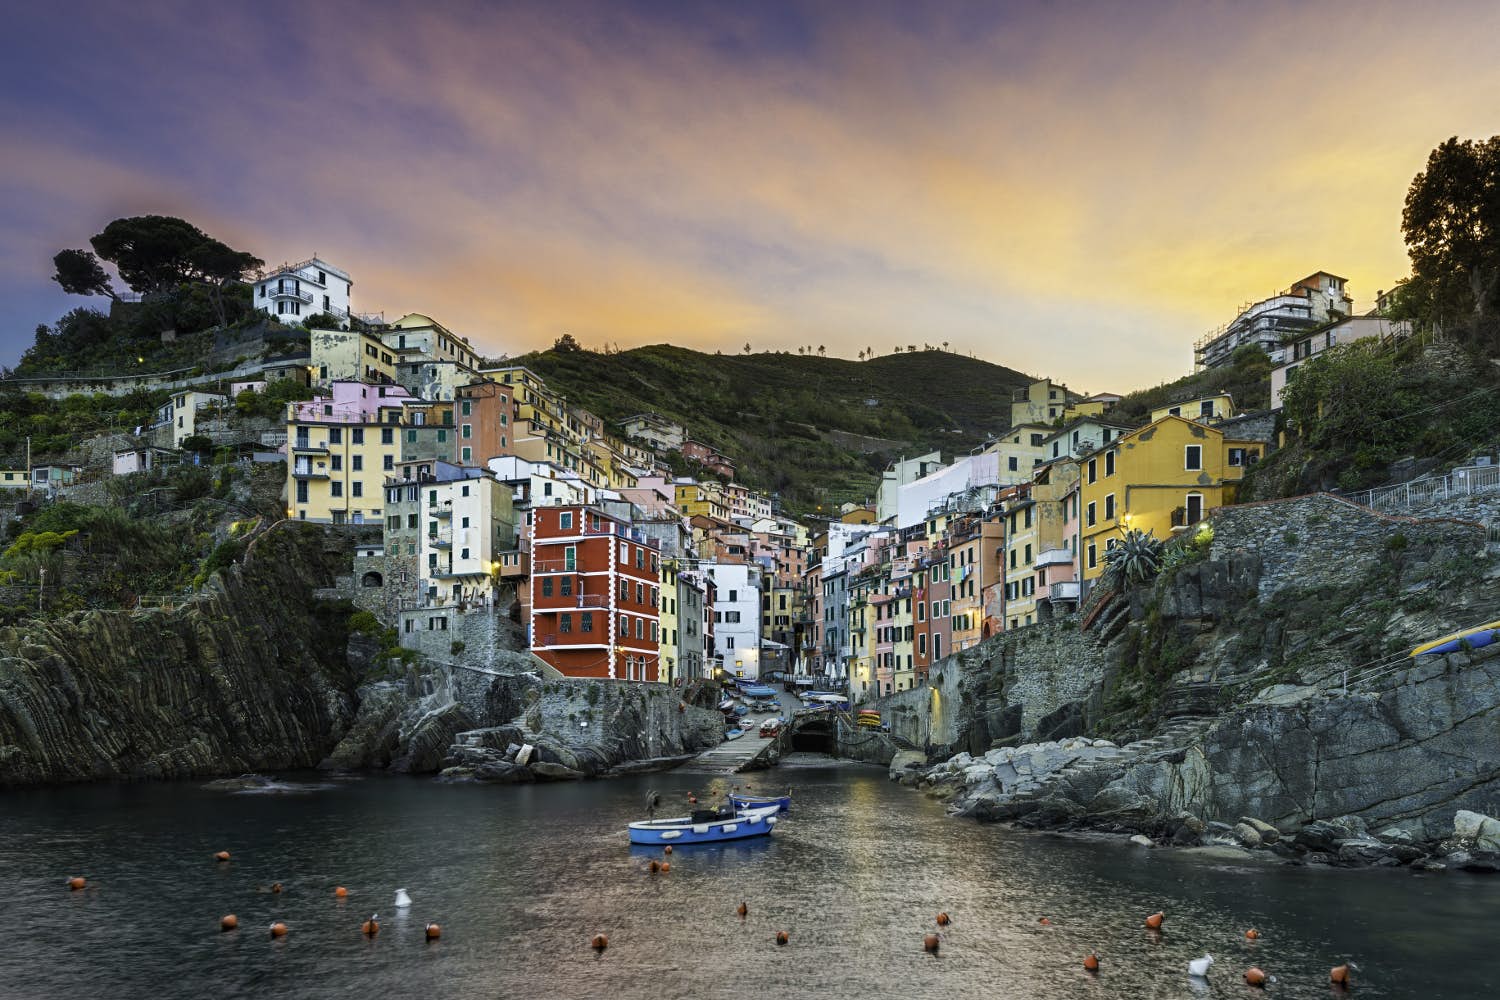 Riomaggiore, Cinque Terre - Best Seaside Hikes in Europe